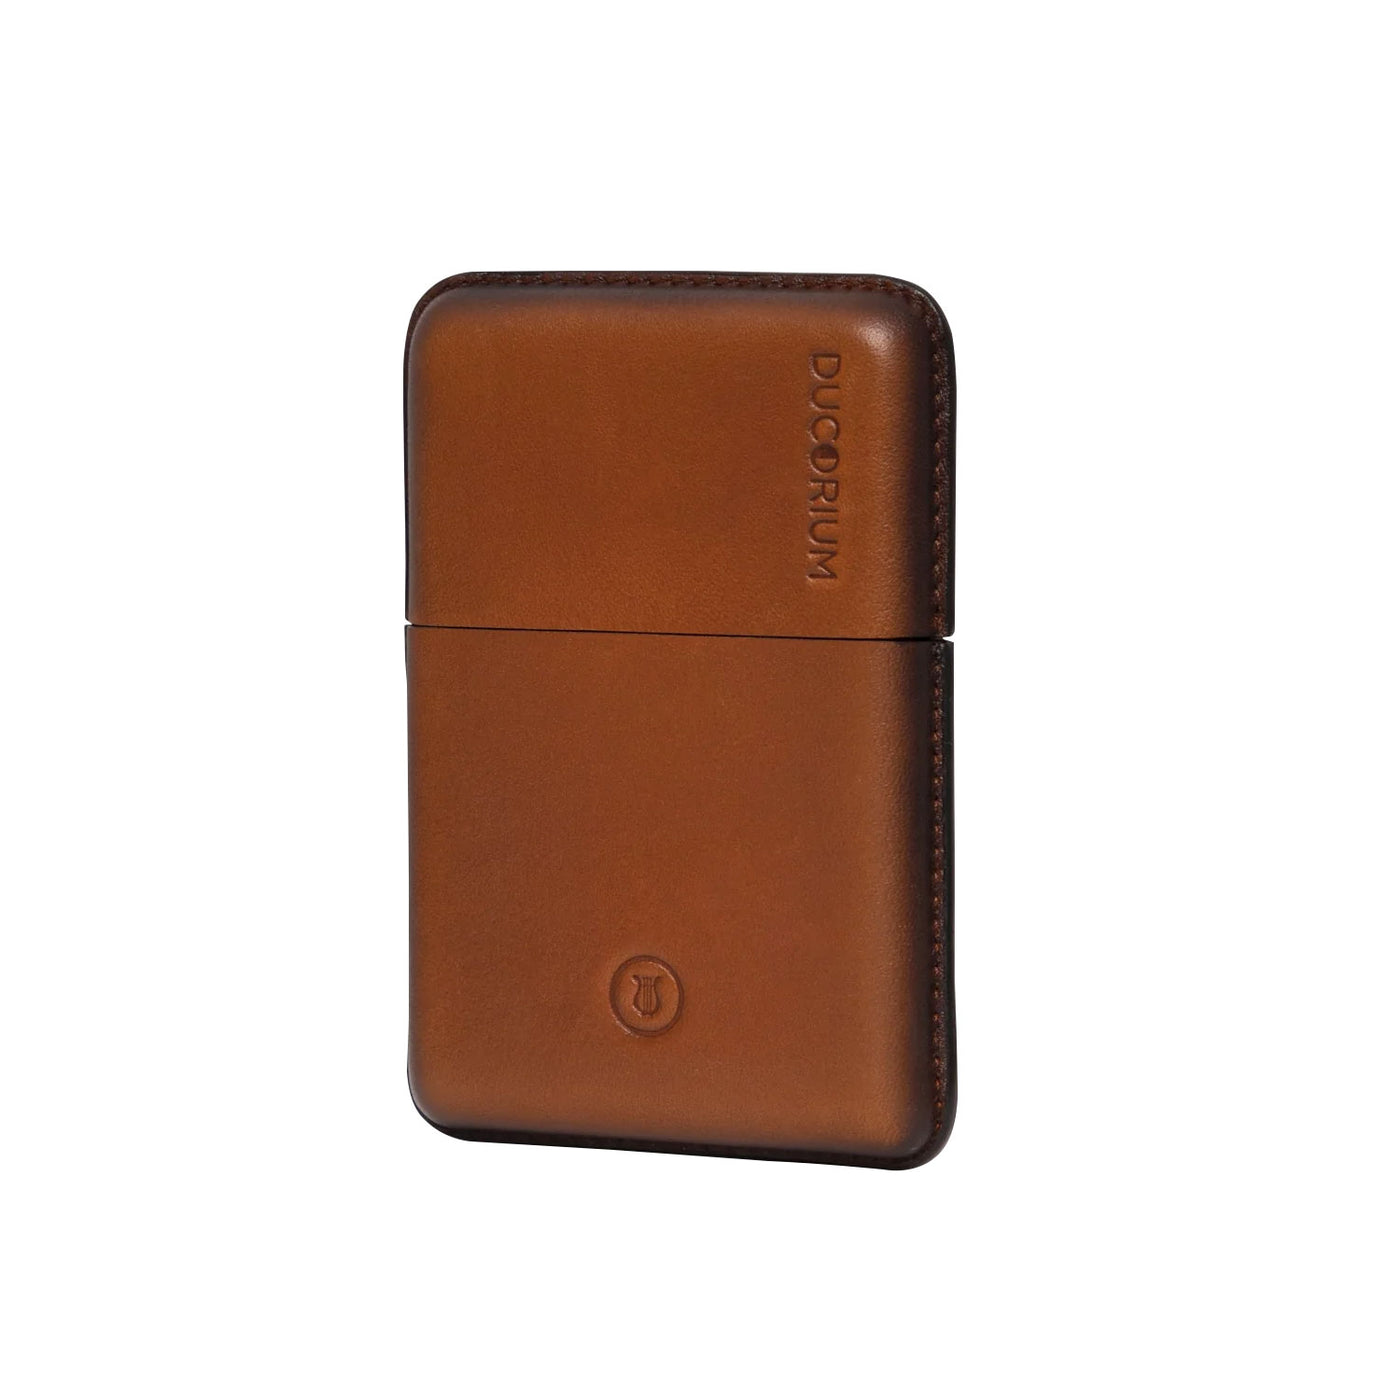 Lapis Bard Ducorium Moulded Card Case - Cognac